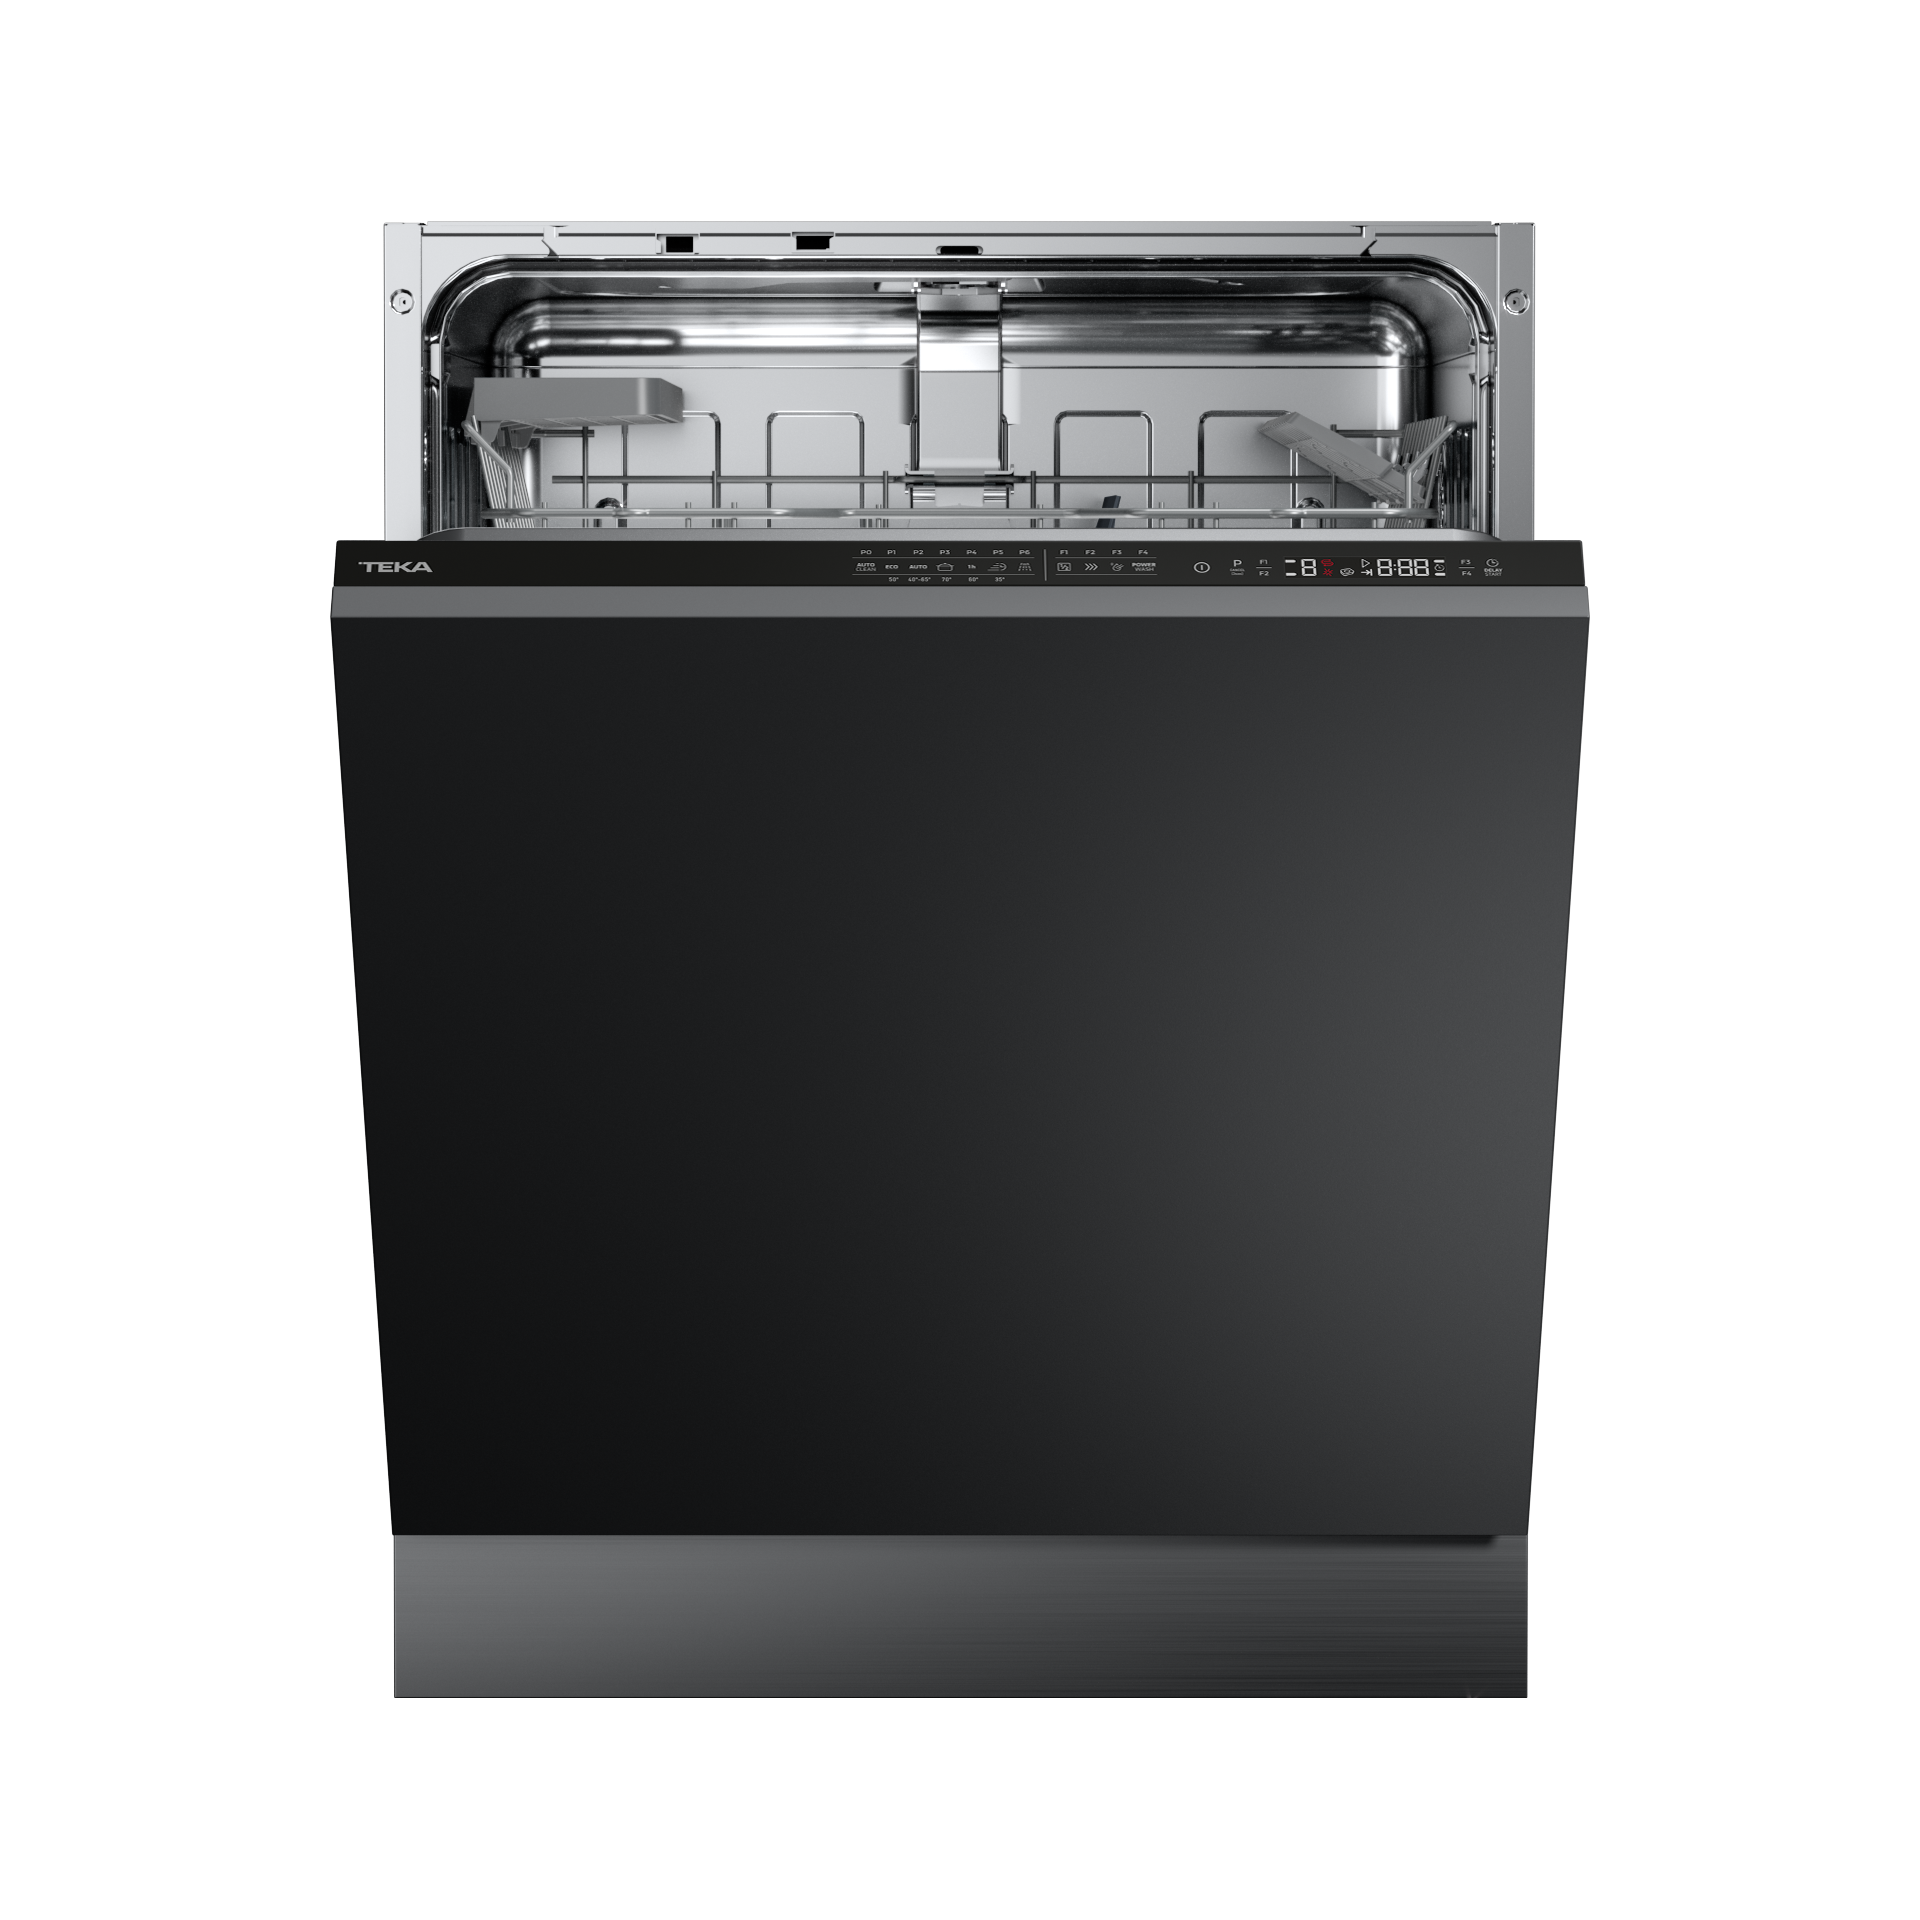 Встраиваемая посудомоечная машина черная. Посудомоечная машина Teka DFI 46700. Посудомоечная машина Kuppersbusch g 6300.0 v. Teka DFI 46950 посудомоечная машина. Teka DFI 76950.